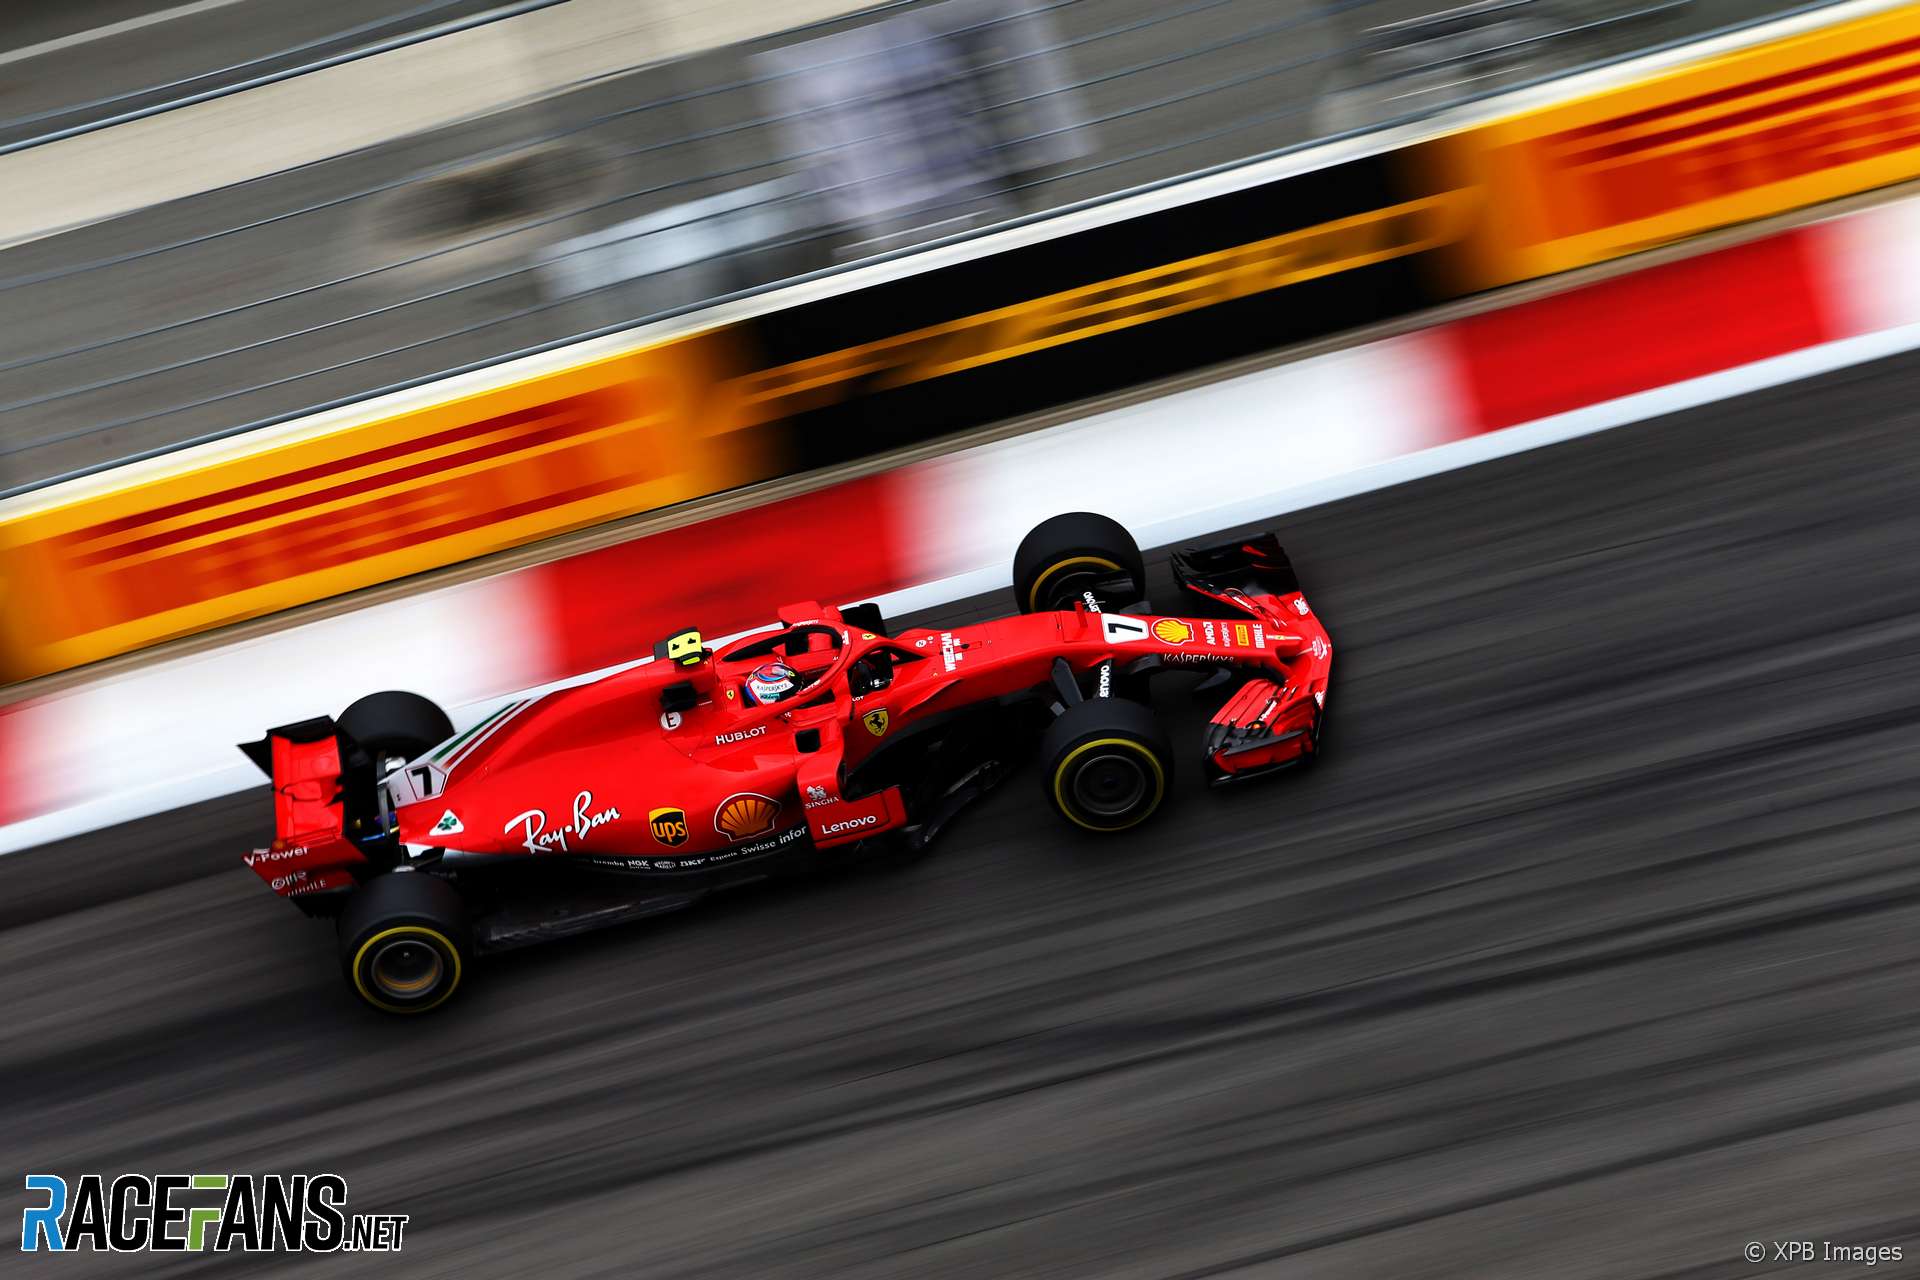 Kimi Raikkonen, Ferrari, Sochi Autodrom, 2018